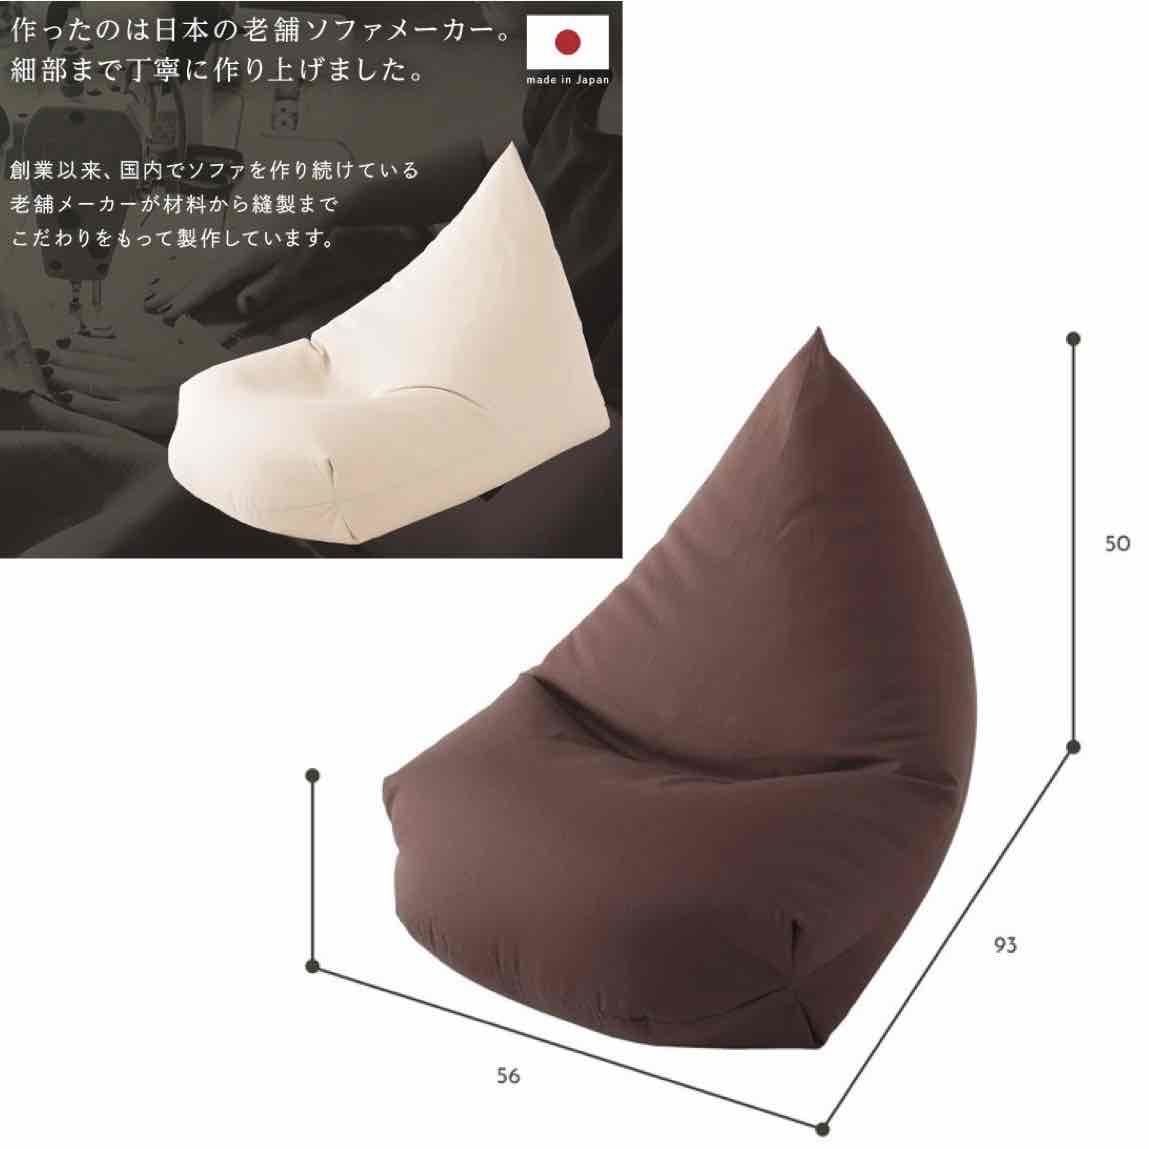  новый товар бисер диван подушка сделано в Японии текстильный .. соус одиночный Северная Европа человек .dame. делать пол подушка сиденье "zaisu" ребенок домашнее животное один местный .1 человек 